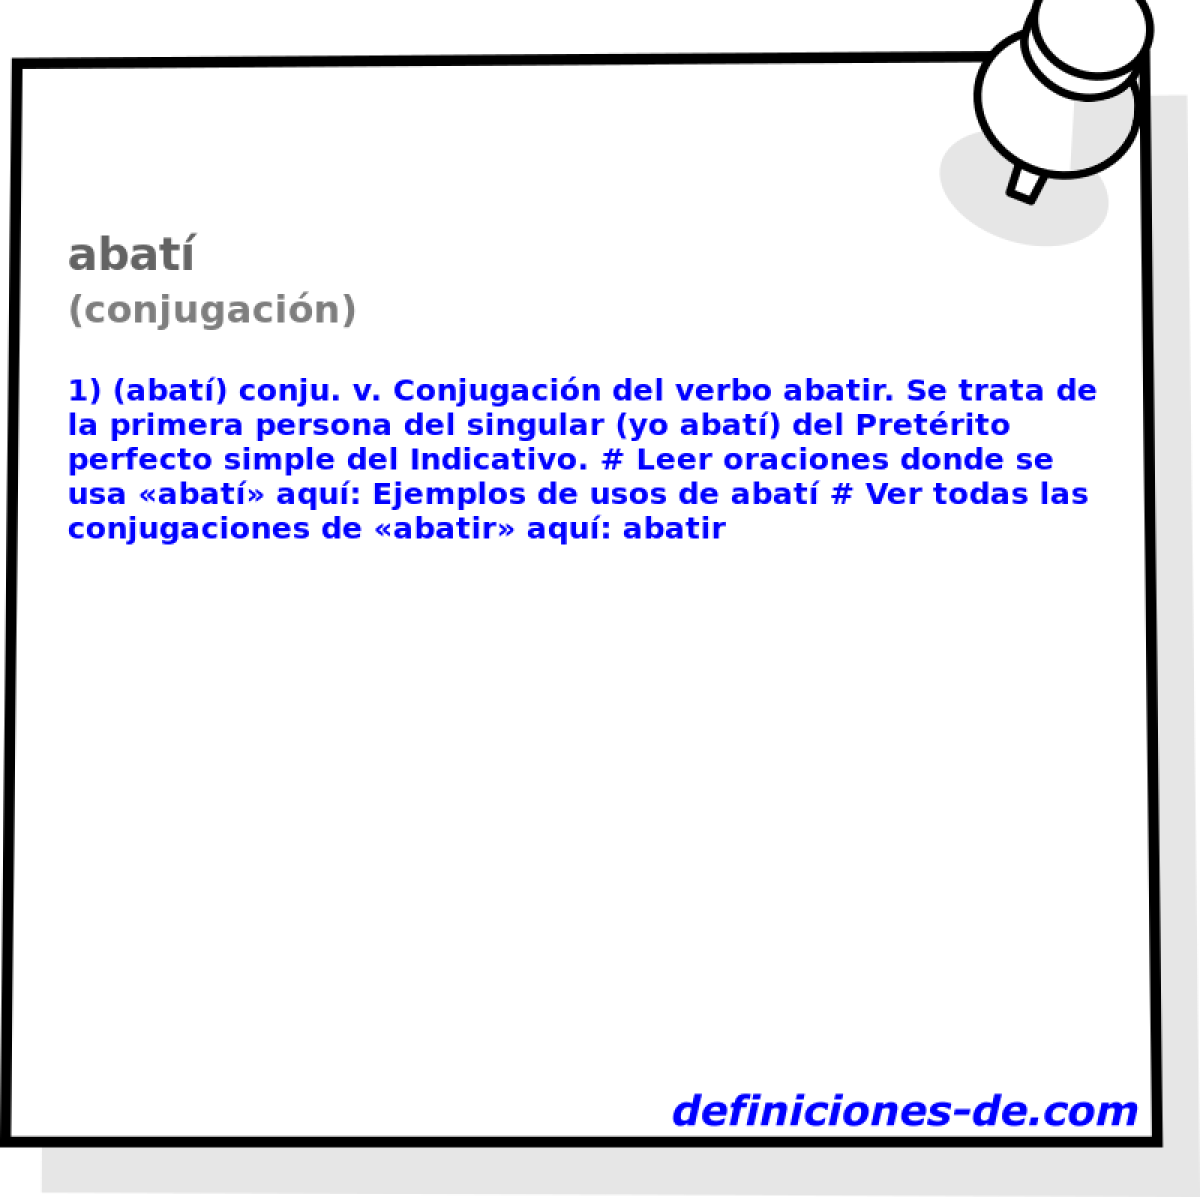 abat (conjugacin)